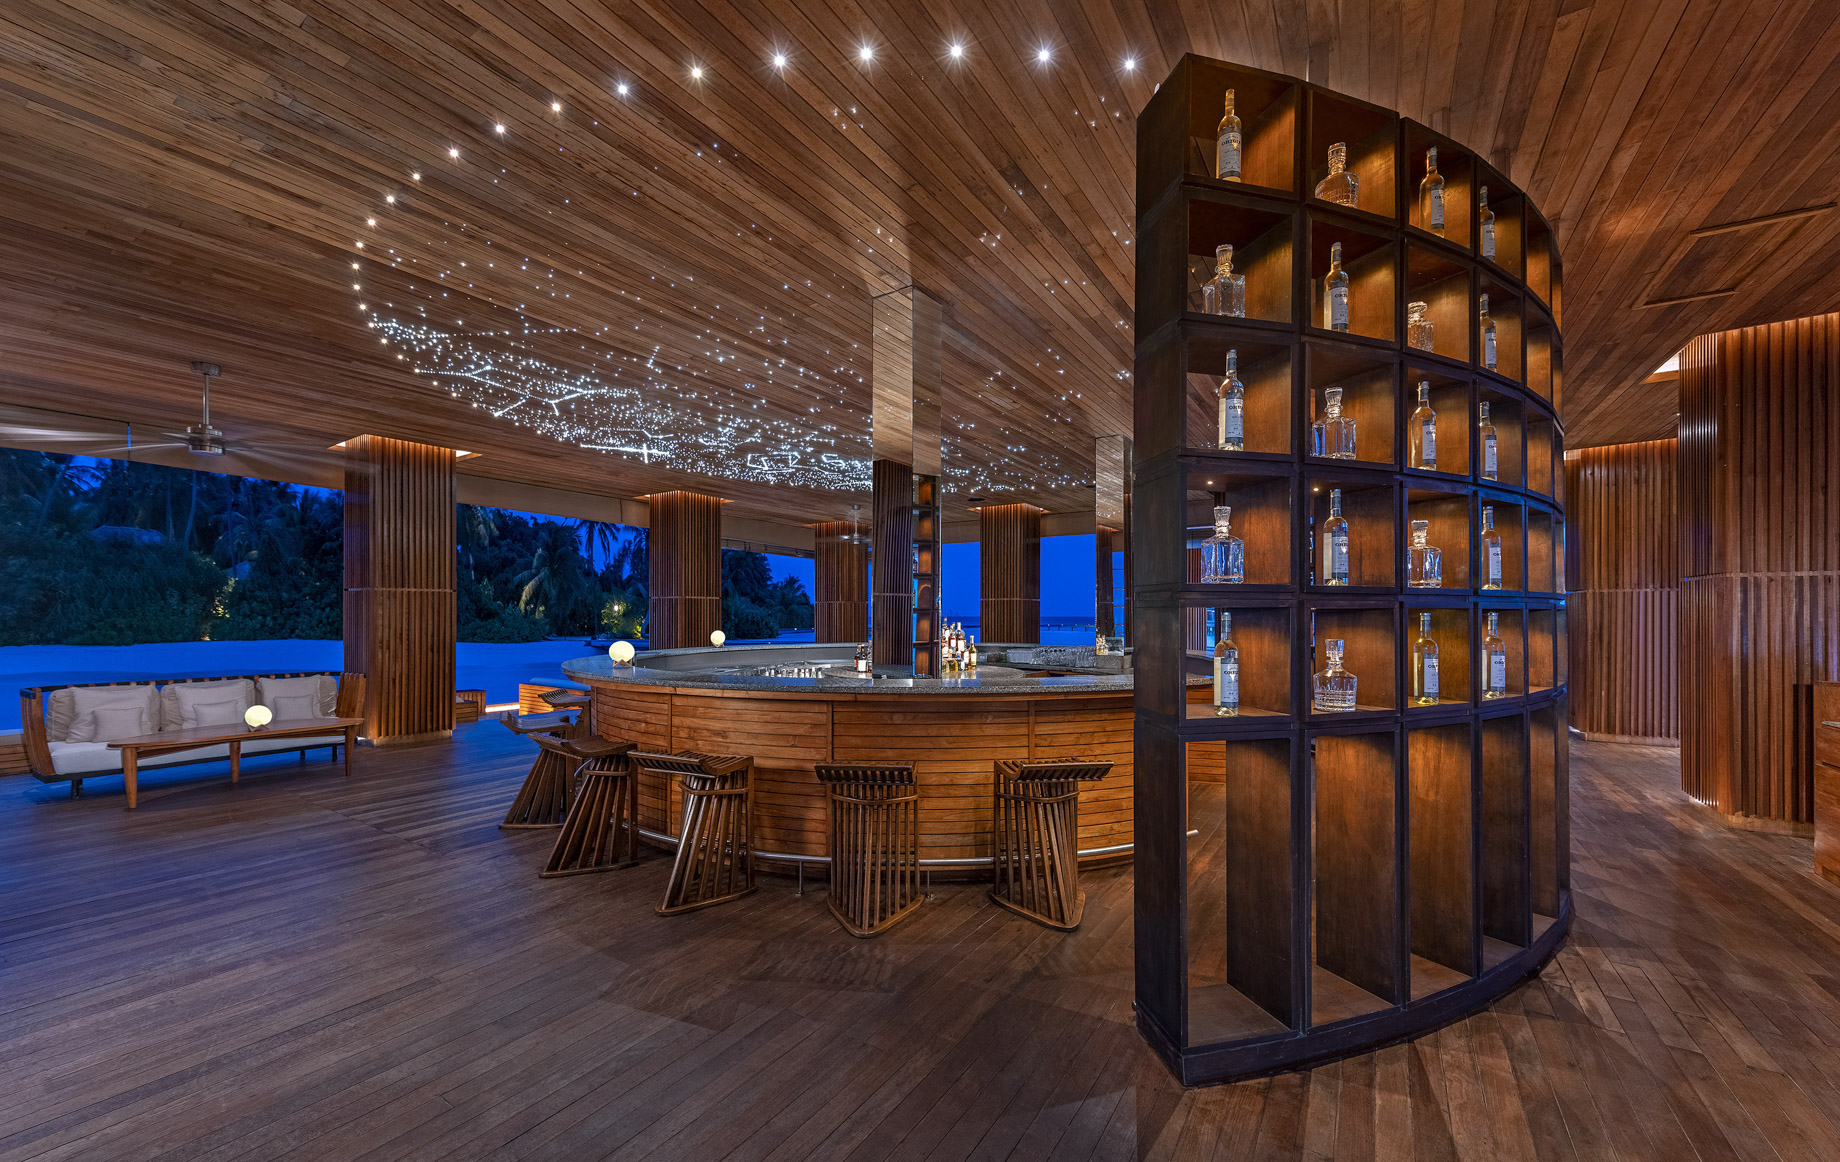 Anantara Kihavah Maldives Villas Resort – Baa Atoll, Maldives – SKY Bar interior